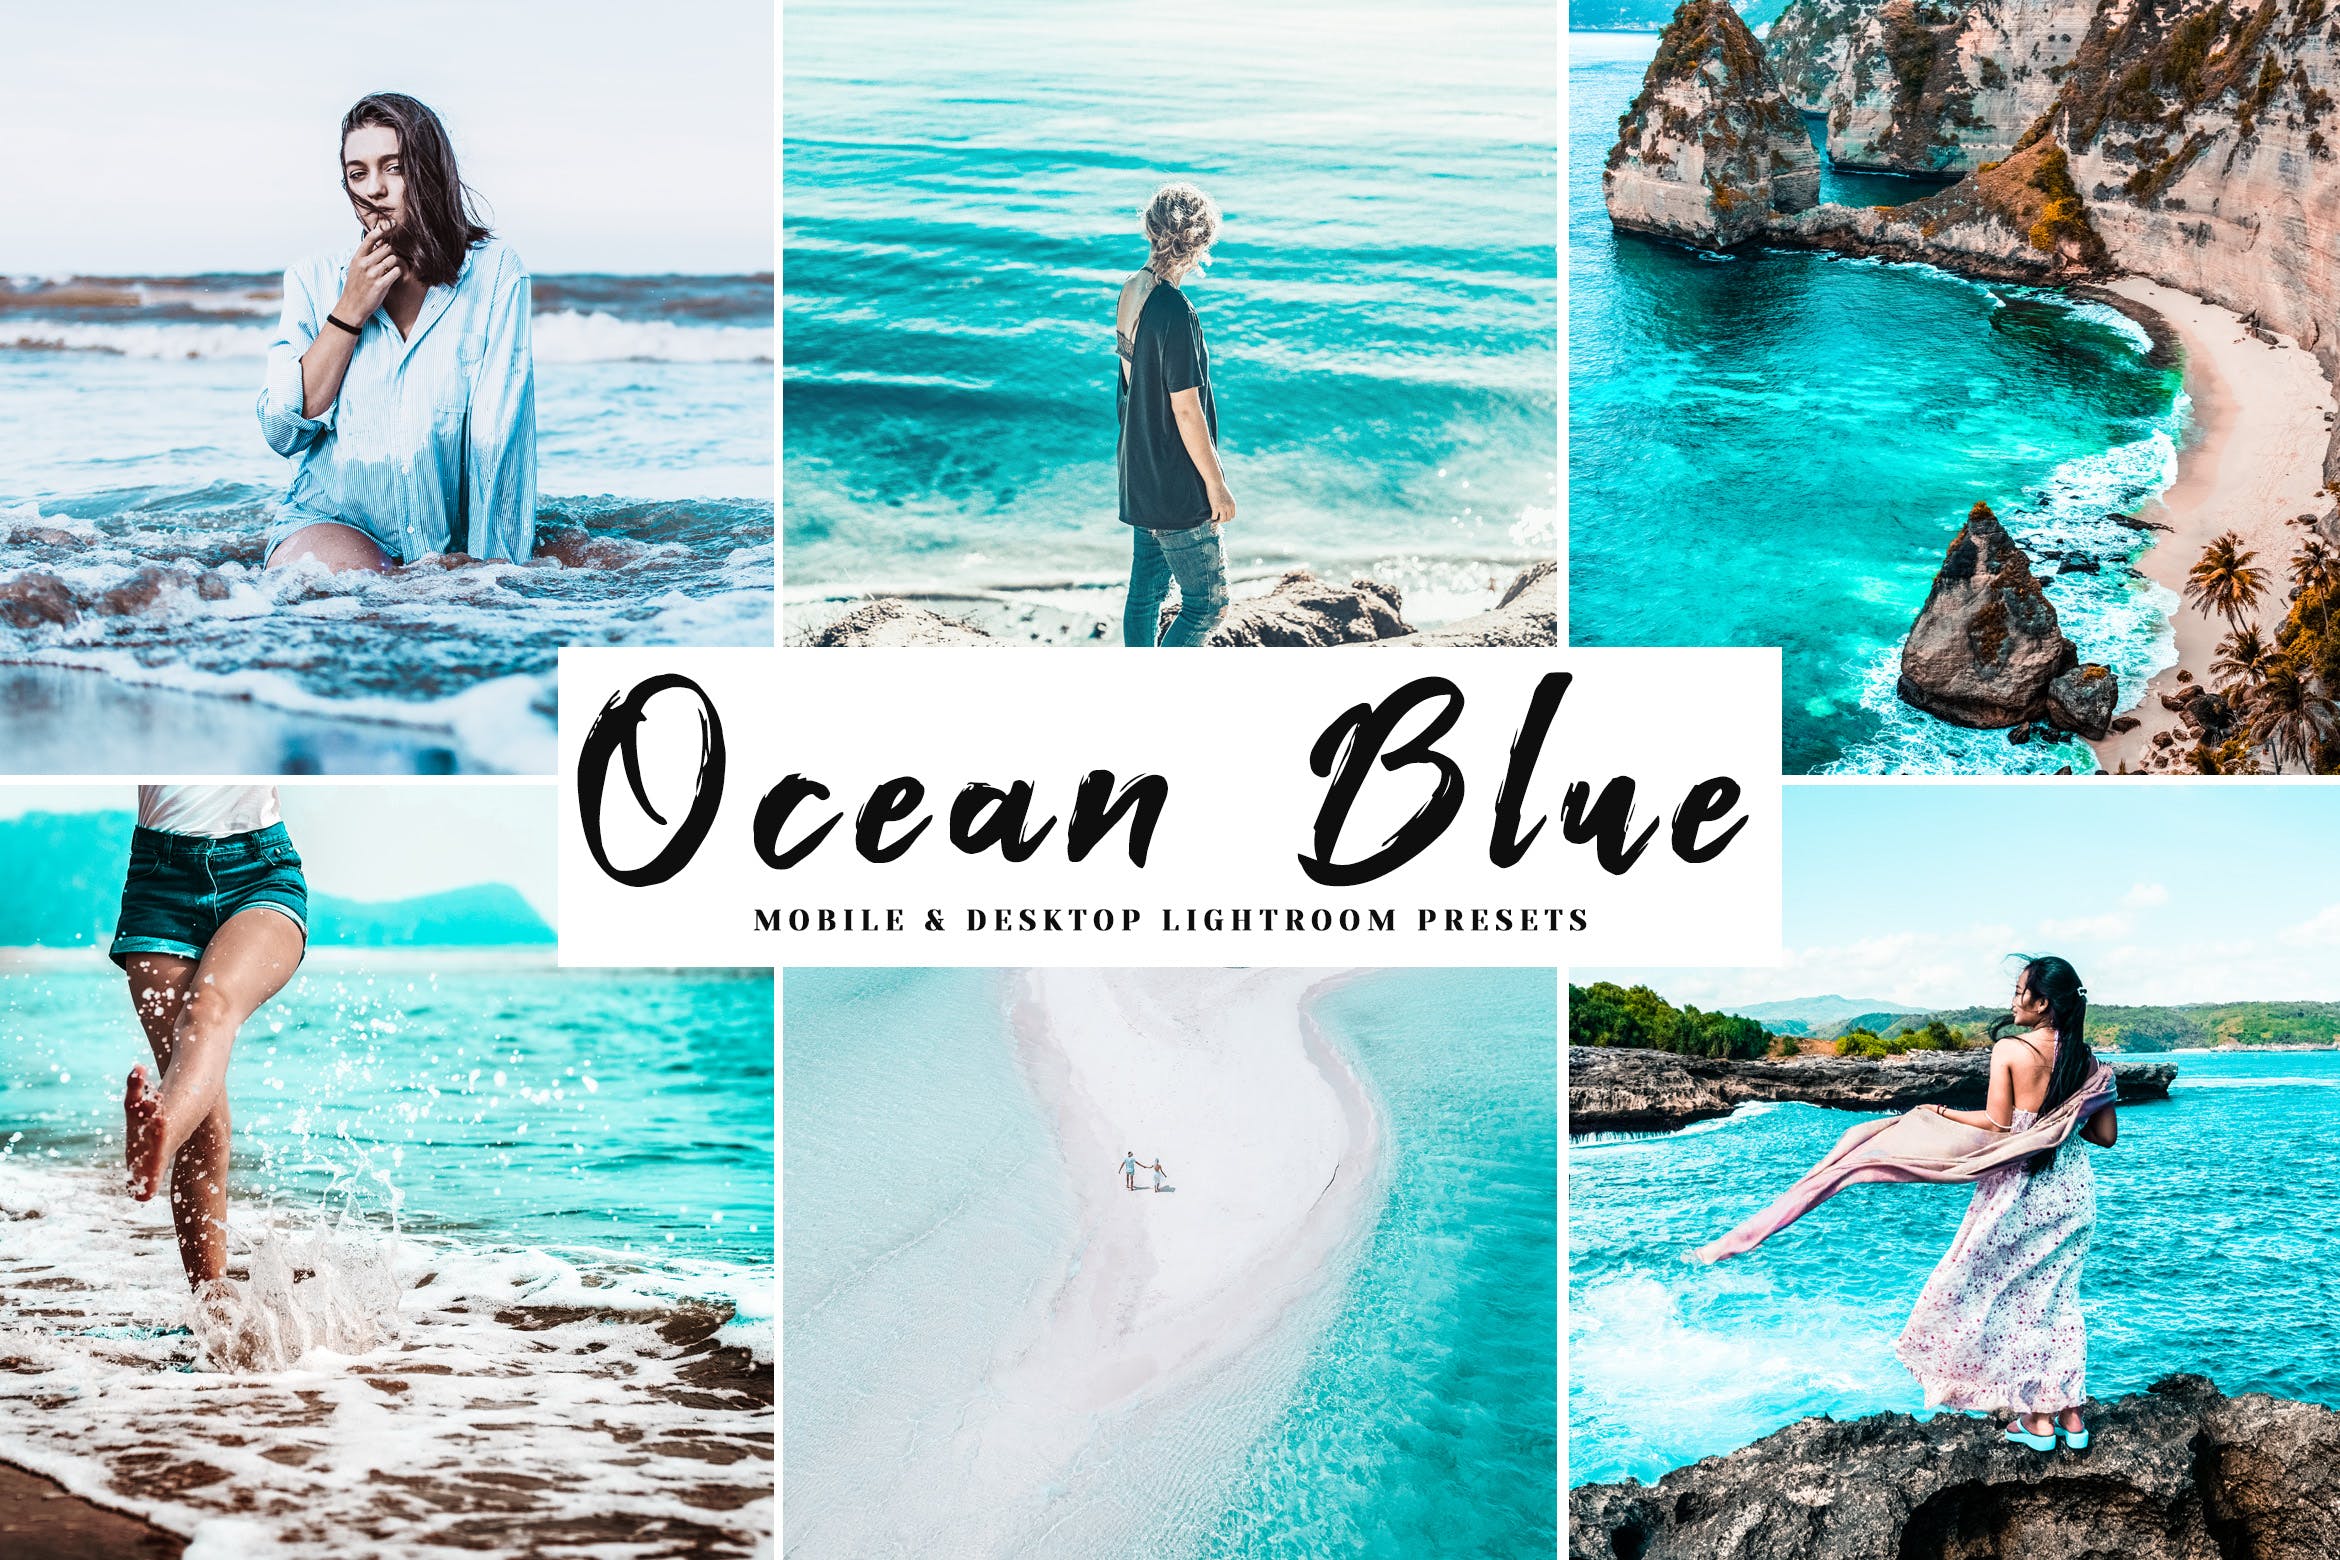 海洋蓝调色滤镜第一素材精选LR预设-海岛/沙滩/大海摄影调色绝配 Ocean Blue Mobile & Desktop Lightroom Presets插图